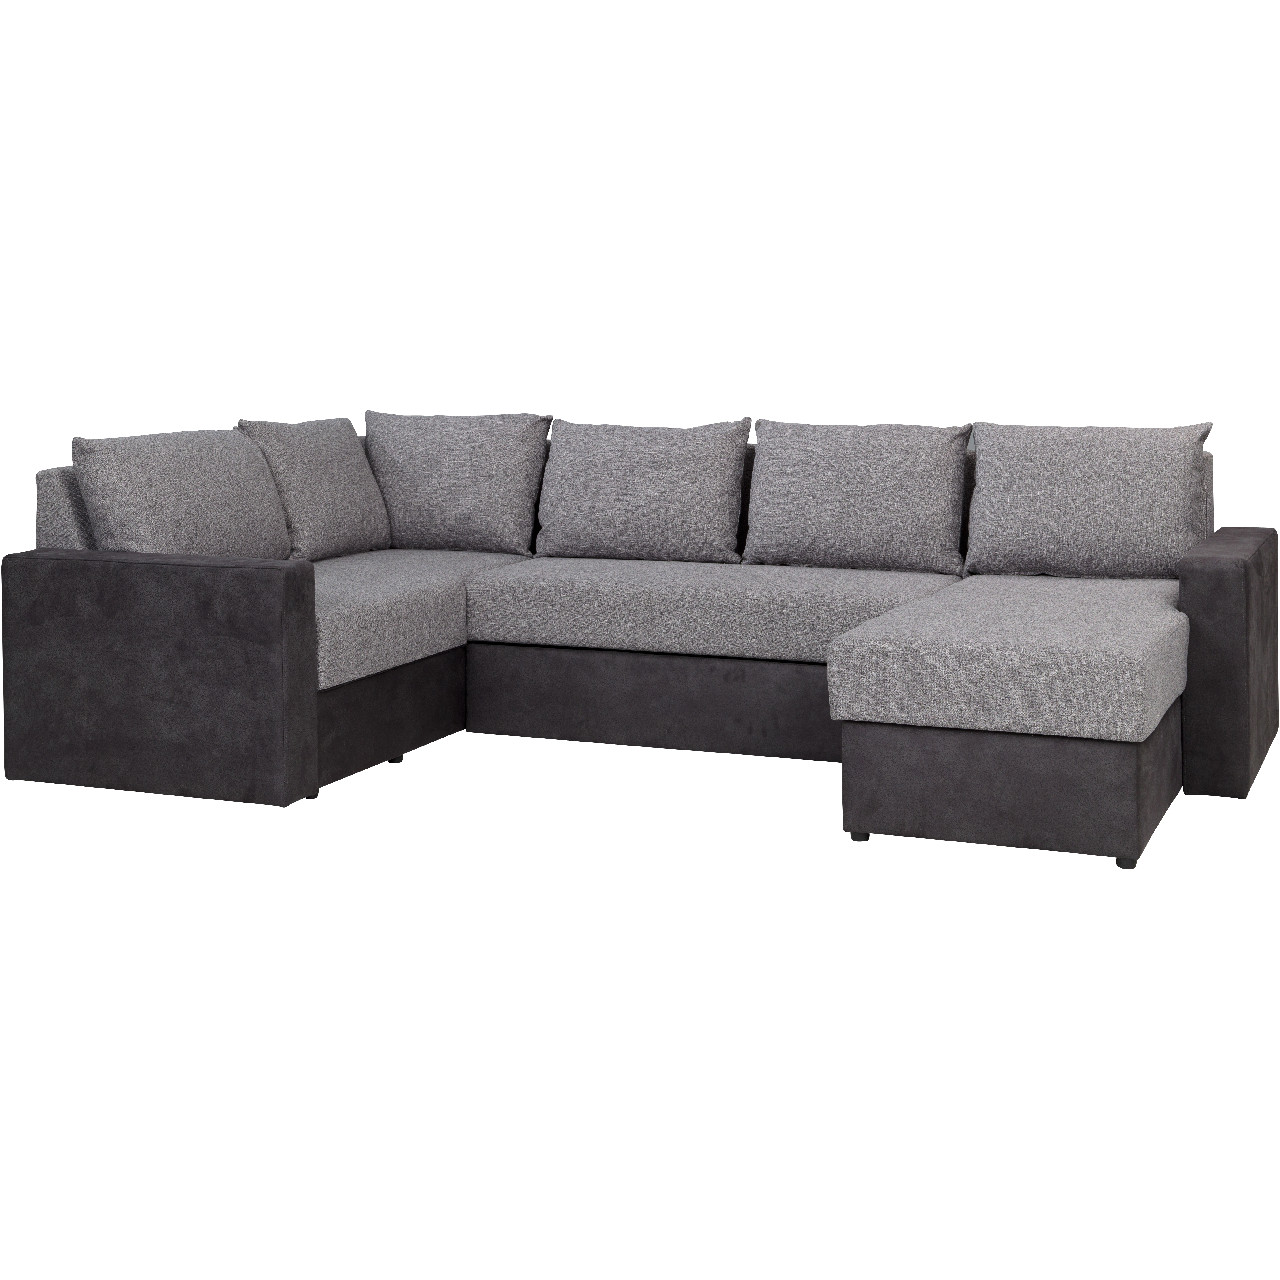 Corner sofa DENVER MAXI mdl 05 + montana 101 right-hand